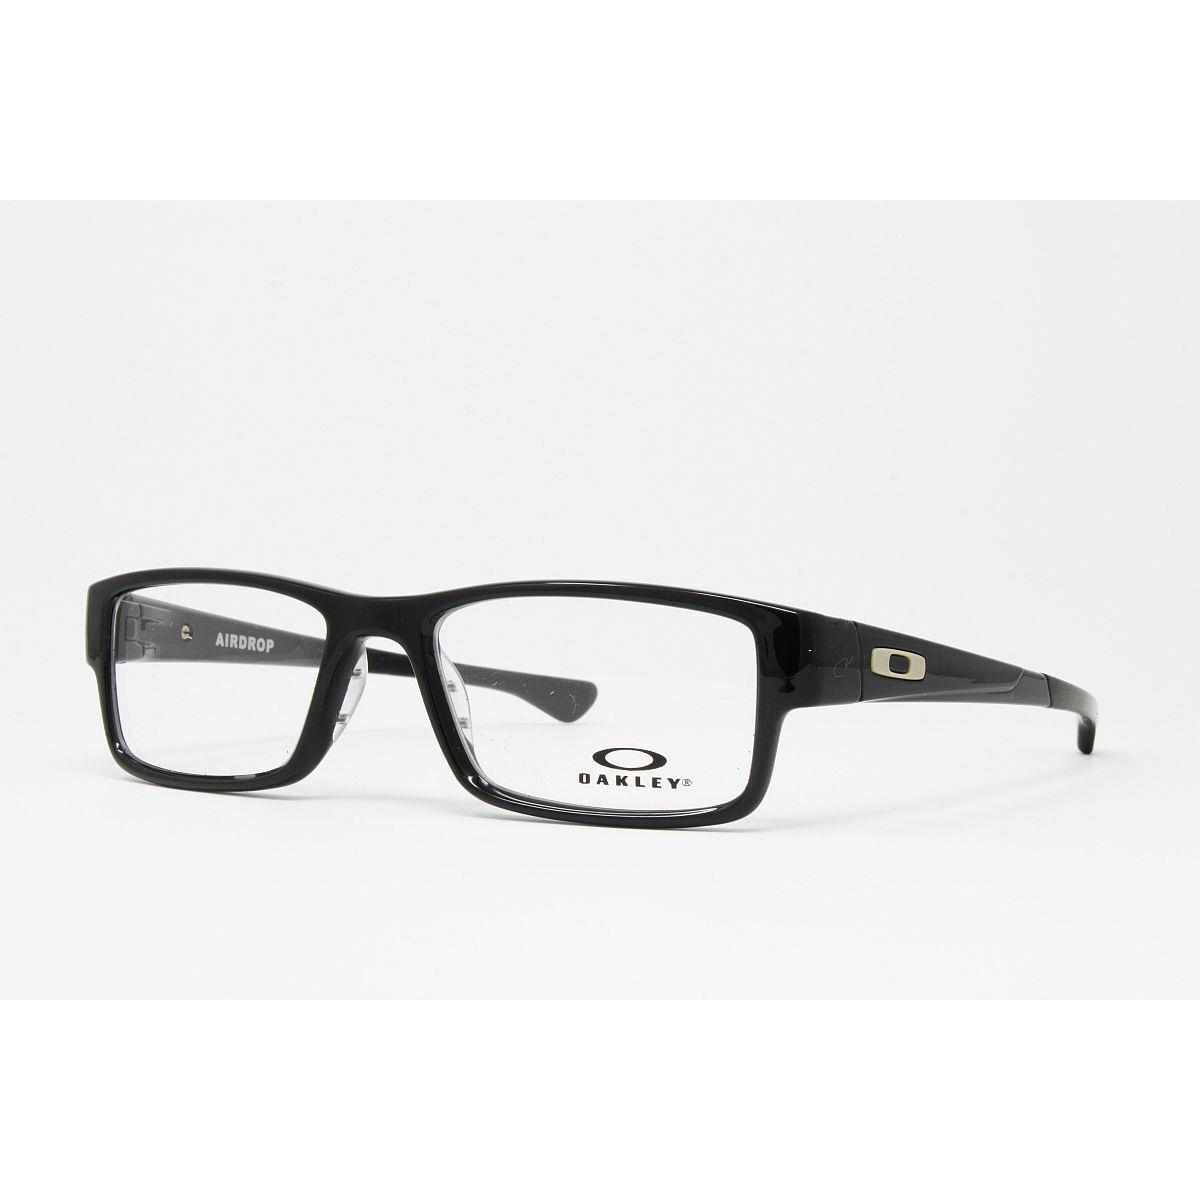 Oakley Optical Airdrop OX8046 02 Black Ink Eyeglasses 55mm Frames RX